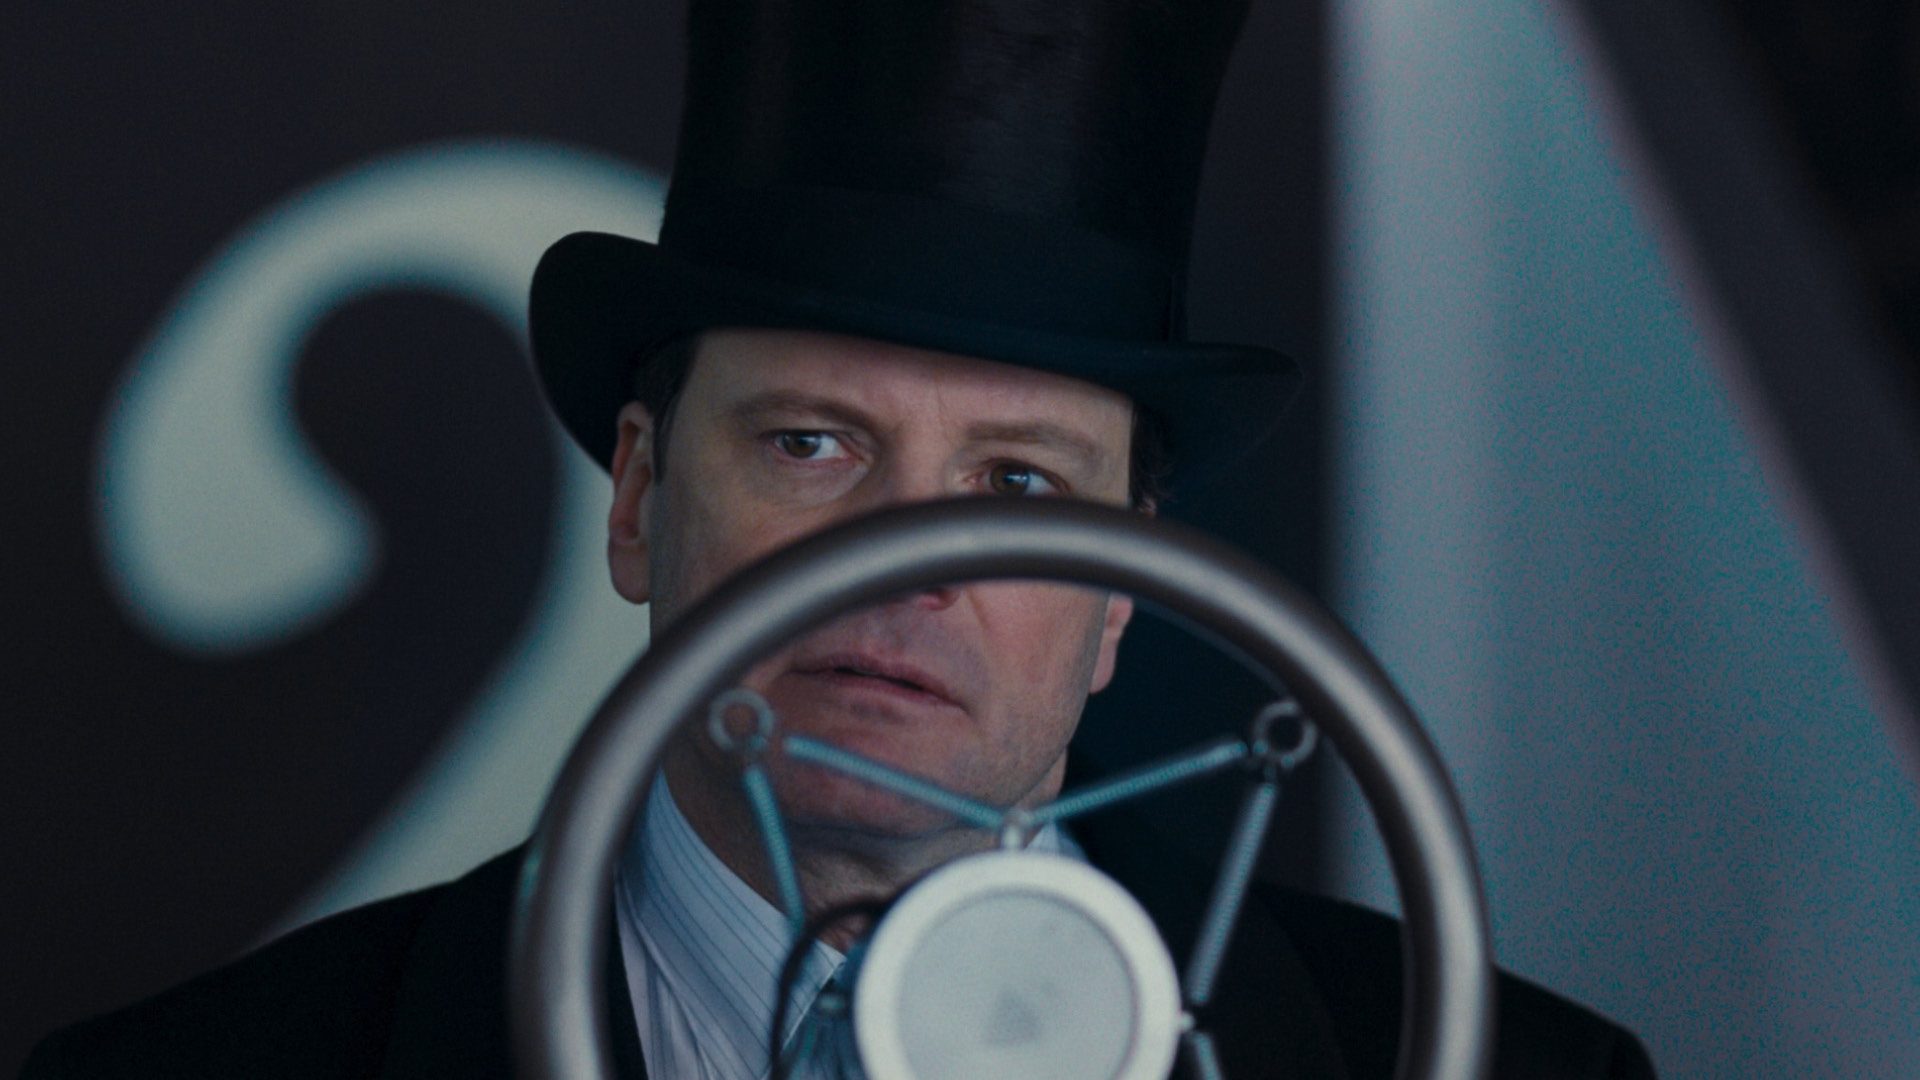 THE KING'S SPEECH film still of Colin Firth